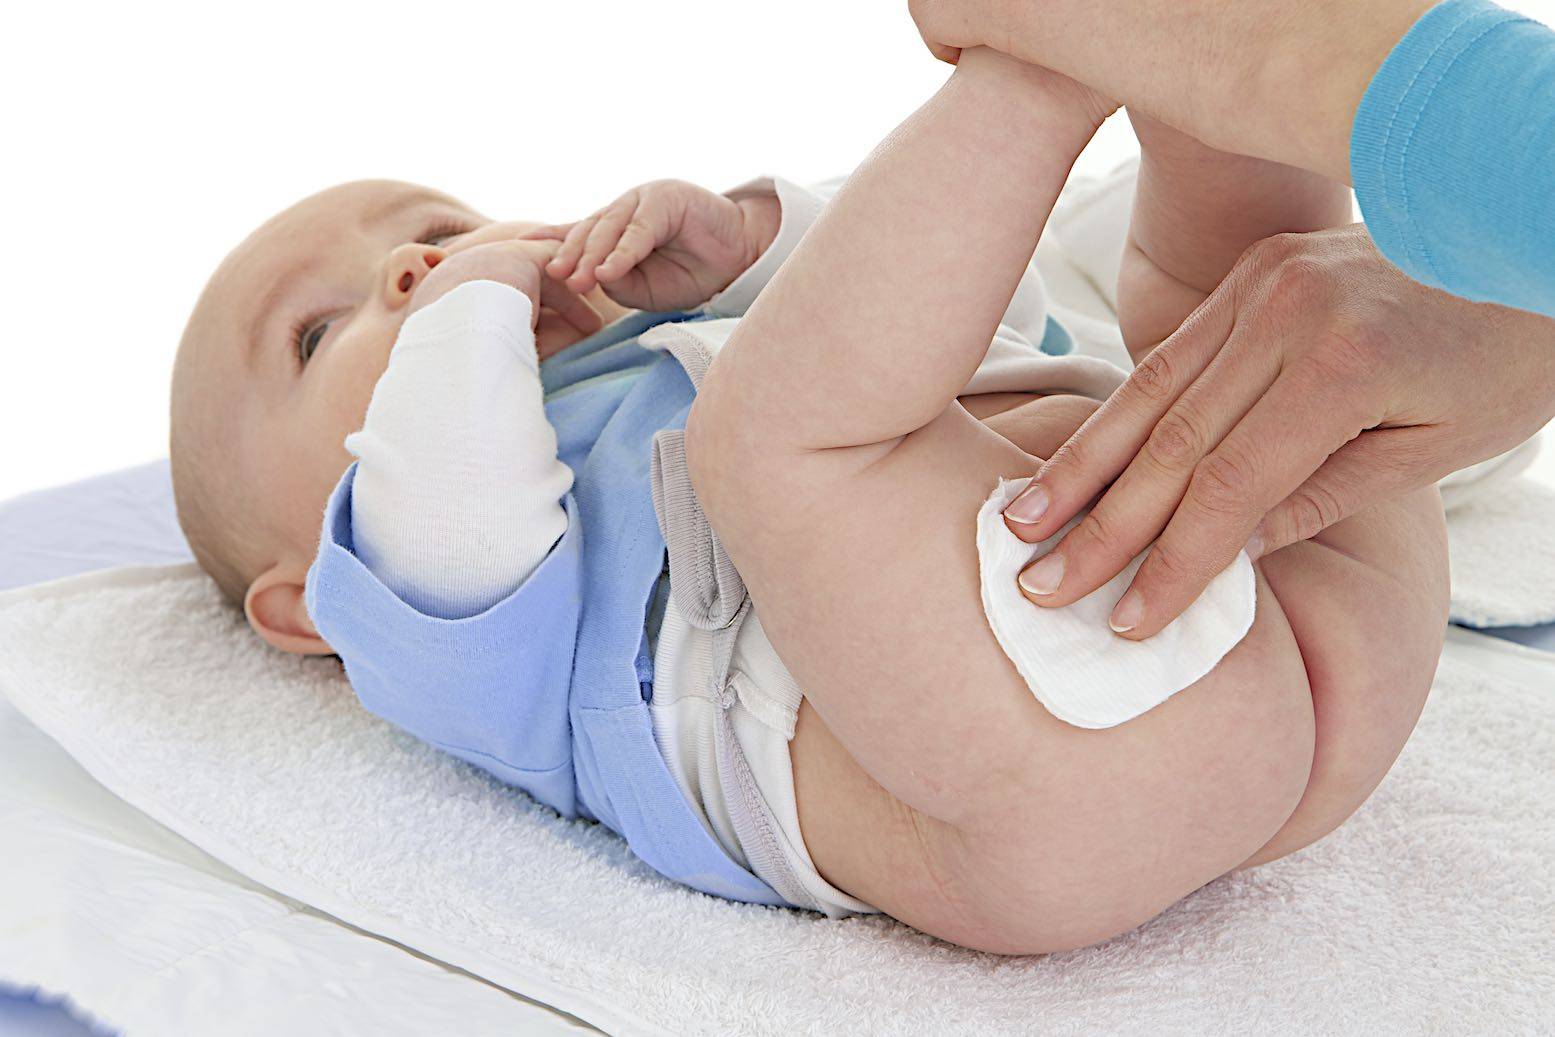 Чем лечить опрелости у новорожденных детей: чем обрабатывать кожу?